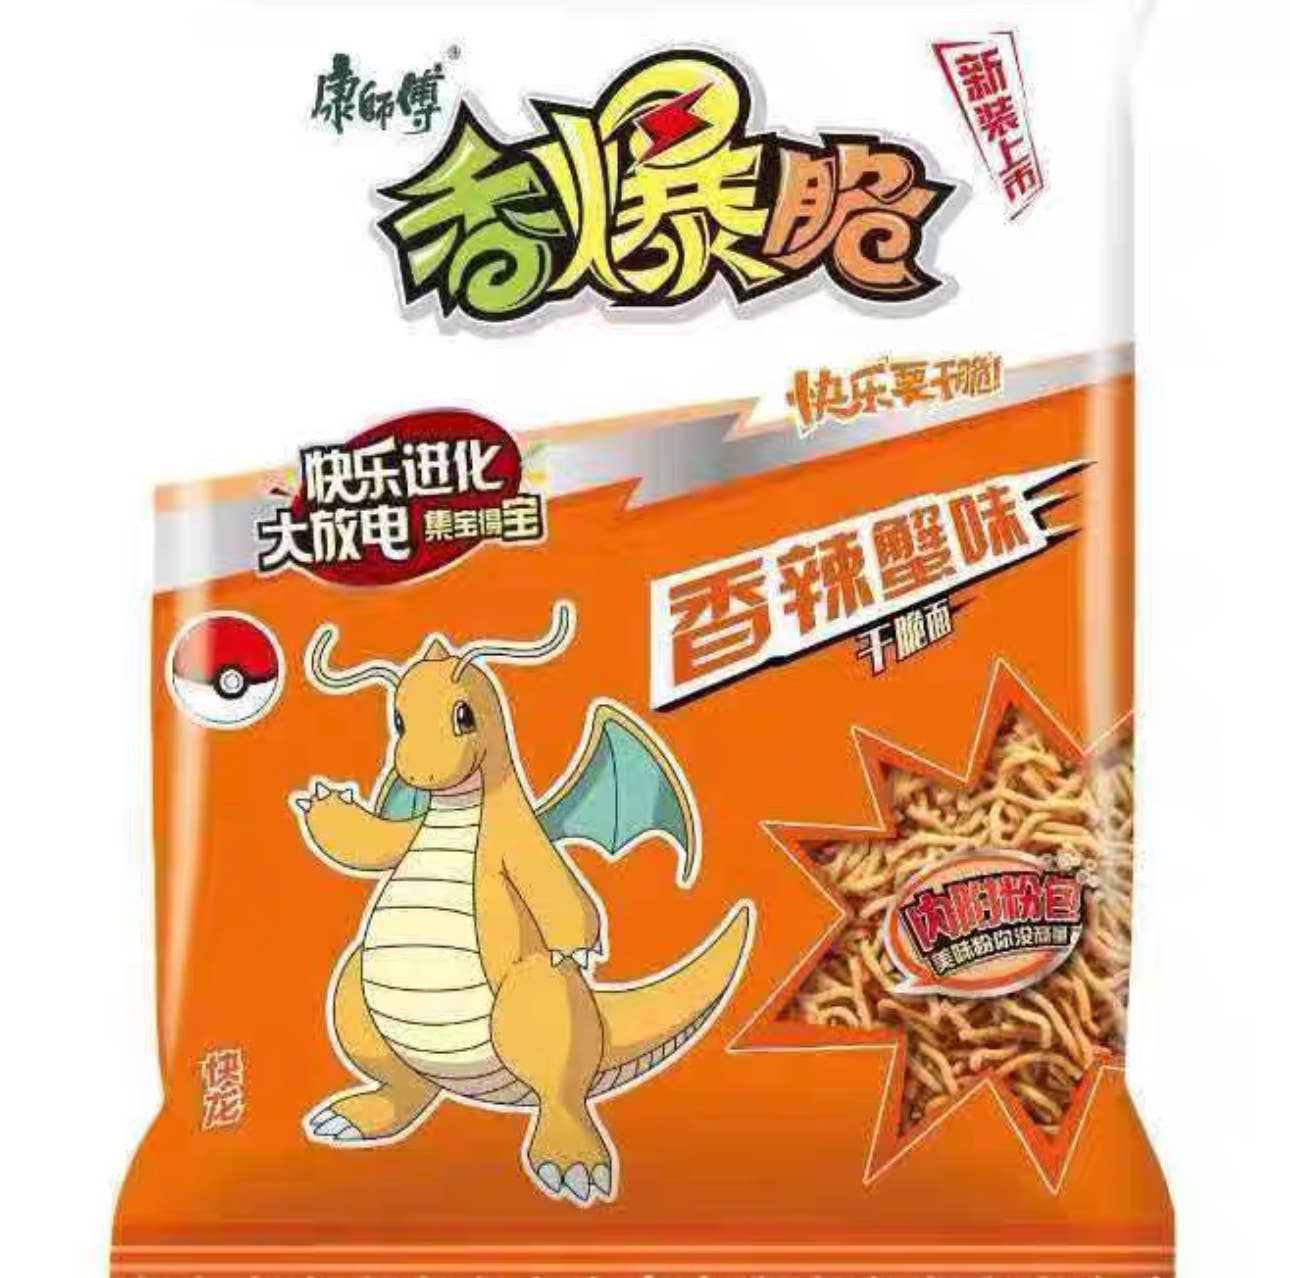 Pokémon Crispy Noodles Dry Instant Noodles Spicy Crab Flavor (33g) 4-Pack